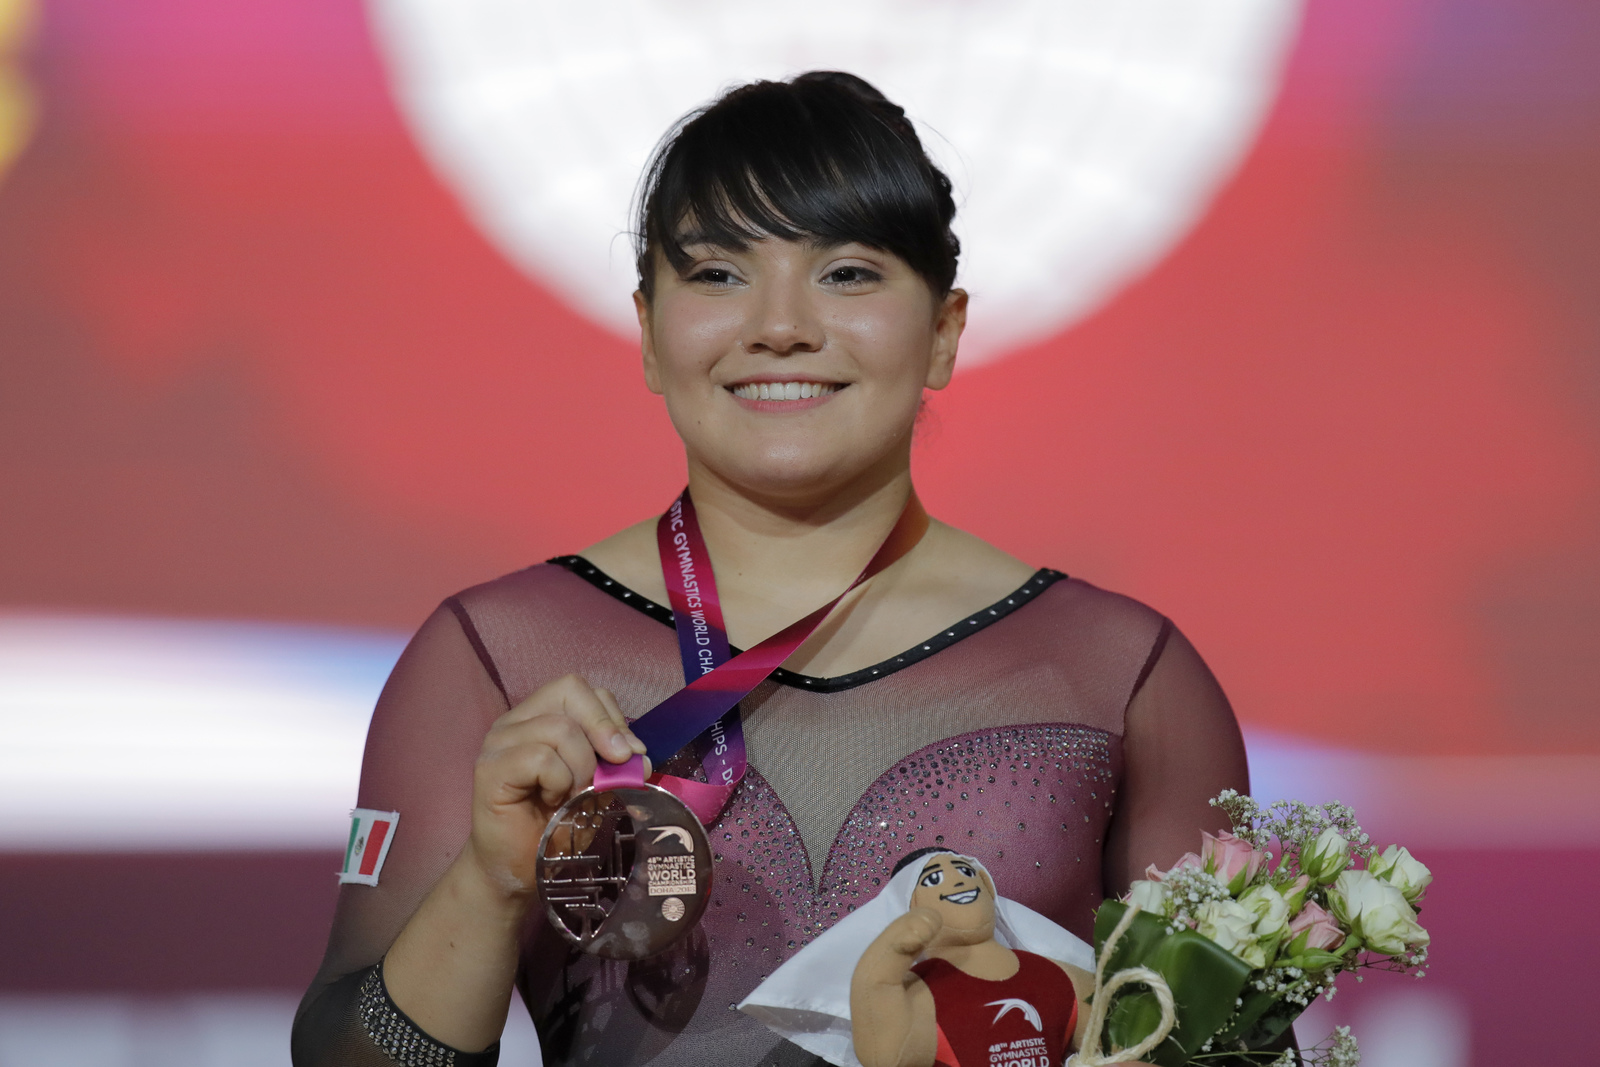 La gimnasta Alexa Moreno protagonizó un histórico momento para su disciplina en México tras subir al podio en un Mundial.